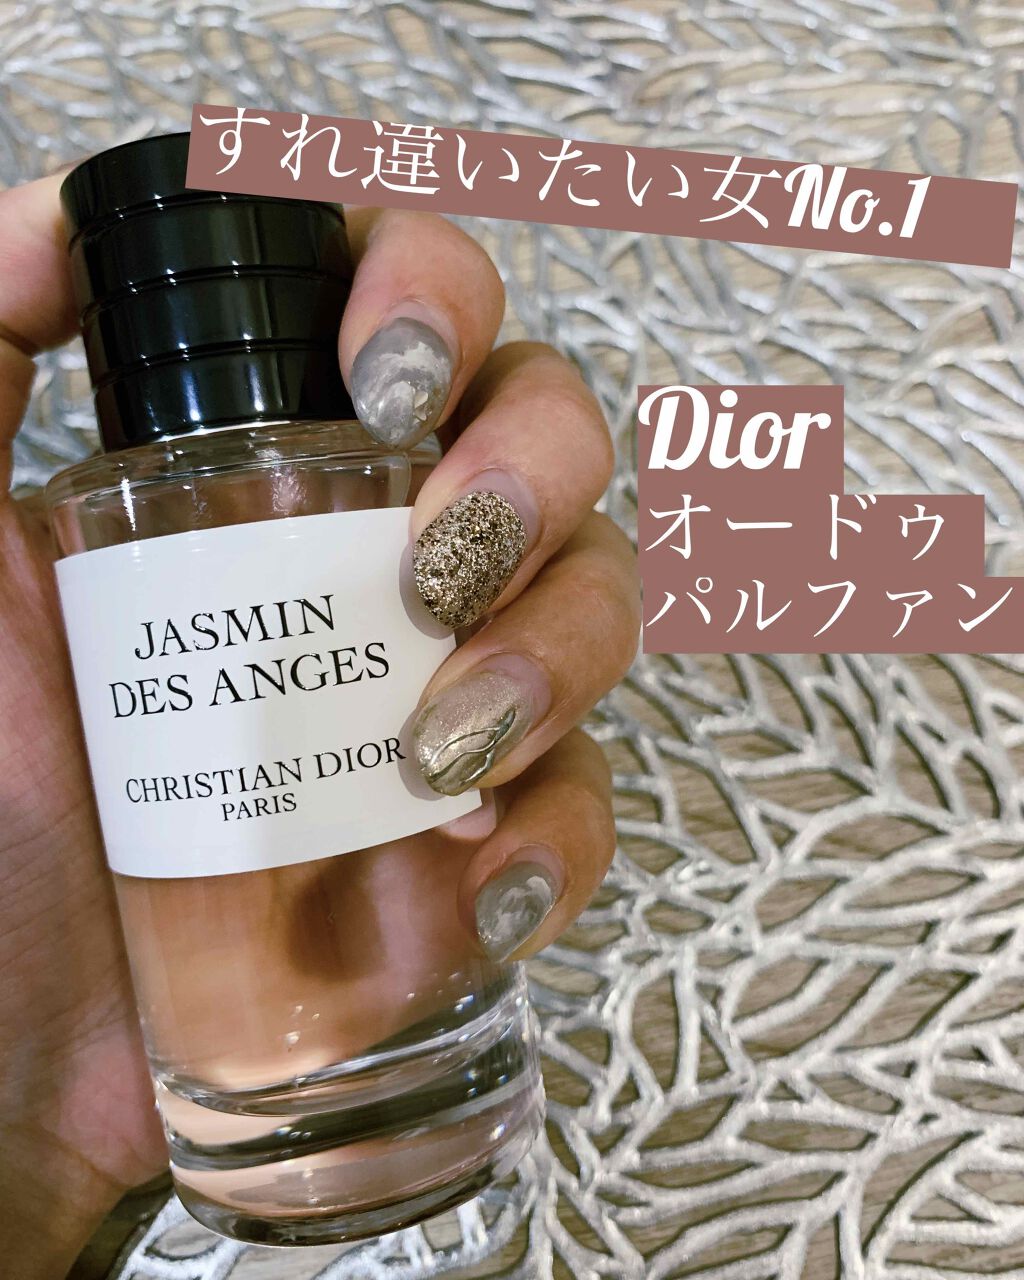 Dior 香水 ジャスミン デ ザンジュ